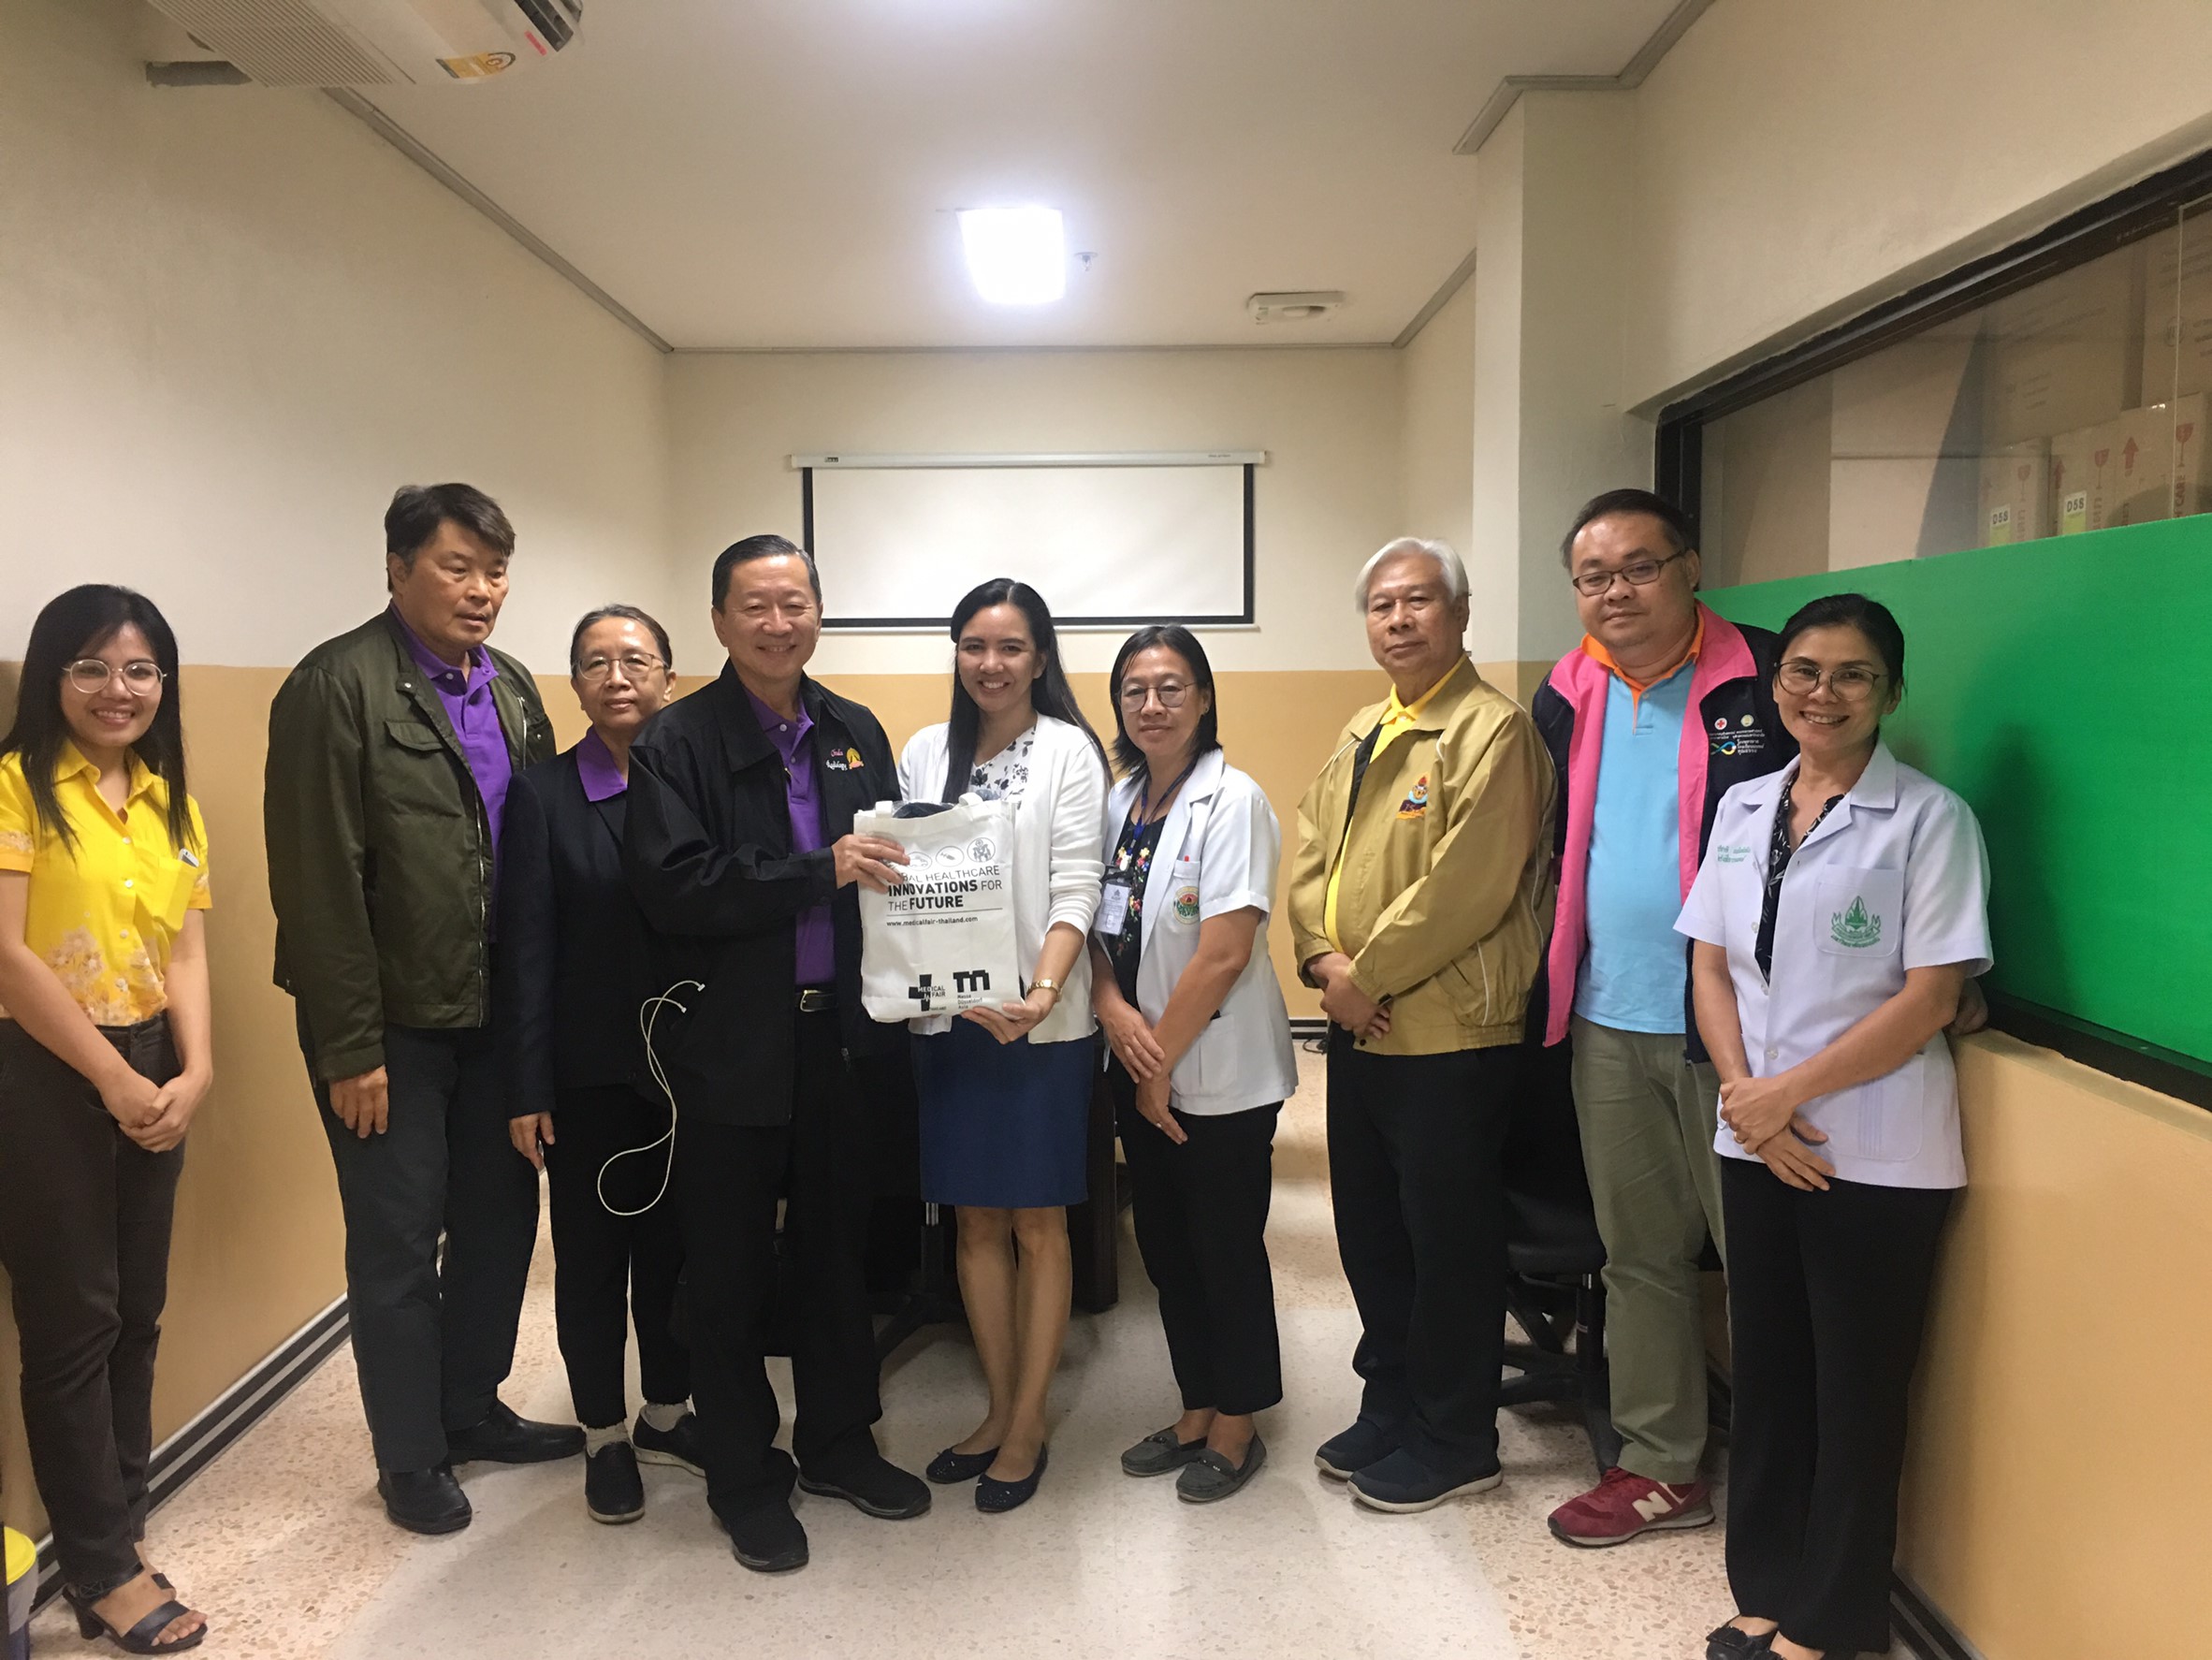 ประชุมวิชาการร่วมกับรังสีการแพทย์แห่งประเทศไทย ครั้งที่17 27-29 พ.ย. - พร้อมเข้าเยี่ยมและให้กำลังใจหน่วยงานรังสีวิทยาในพื้นที่จังหวัดอุบลราชธานีระหว่างวันที่ 25-26 พฤศจิกายน 2562 60